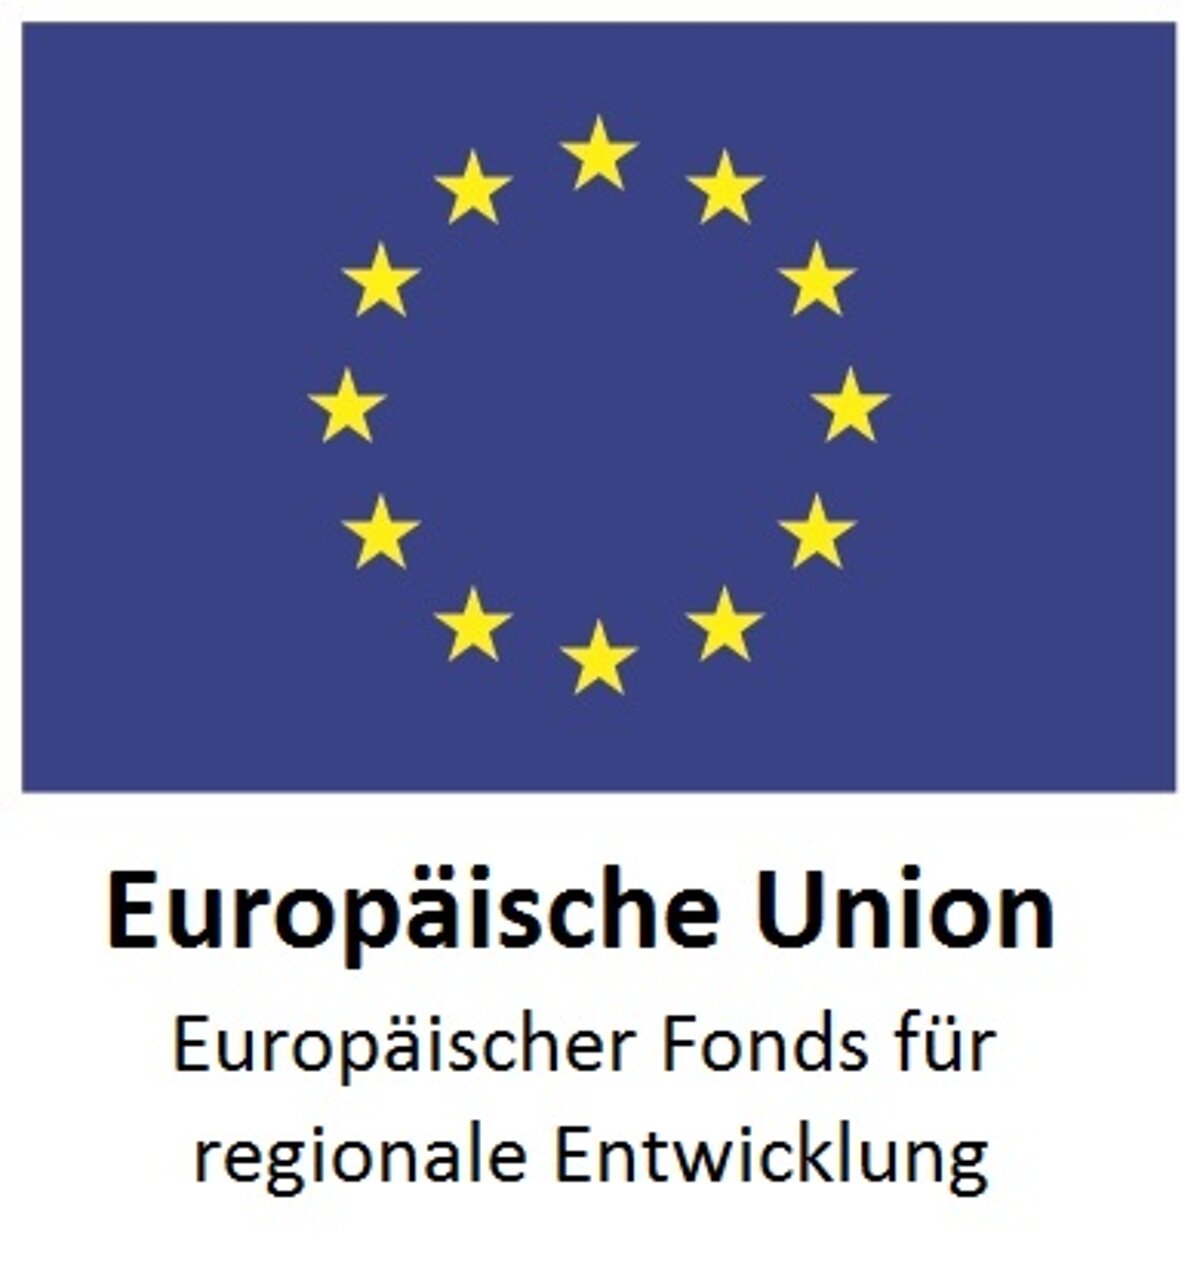 EU-Flagge und Schriftzug mit Förderhinweis Europäischer Fonds für regionale Entwicklung